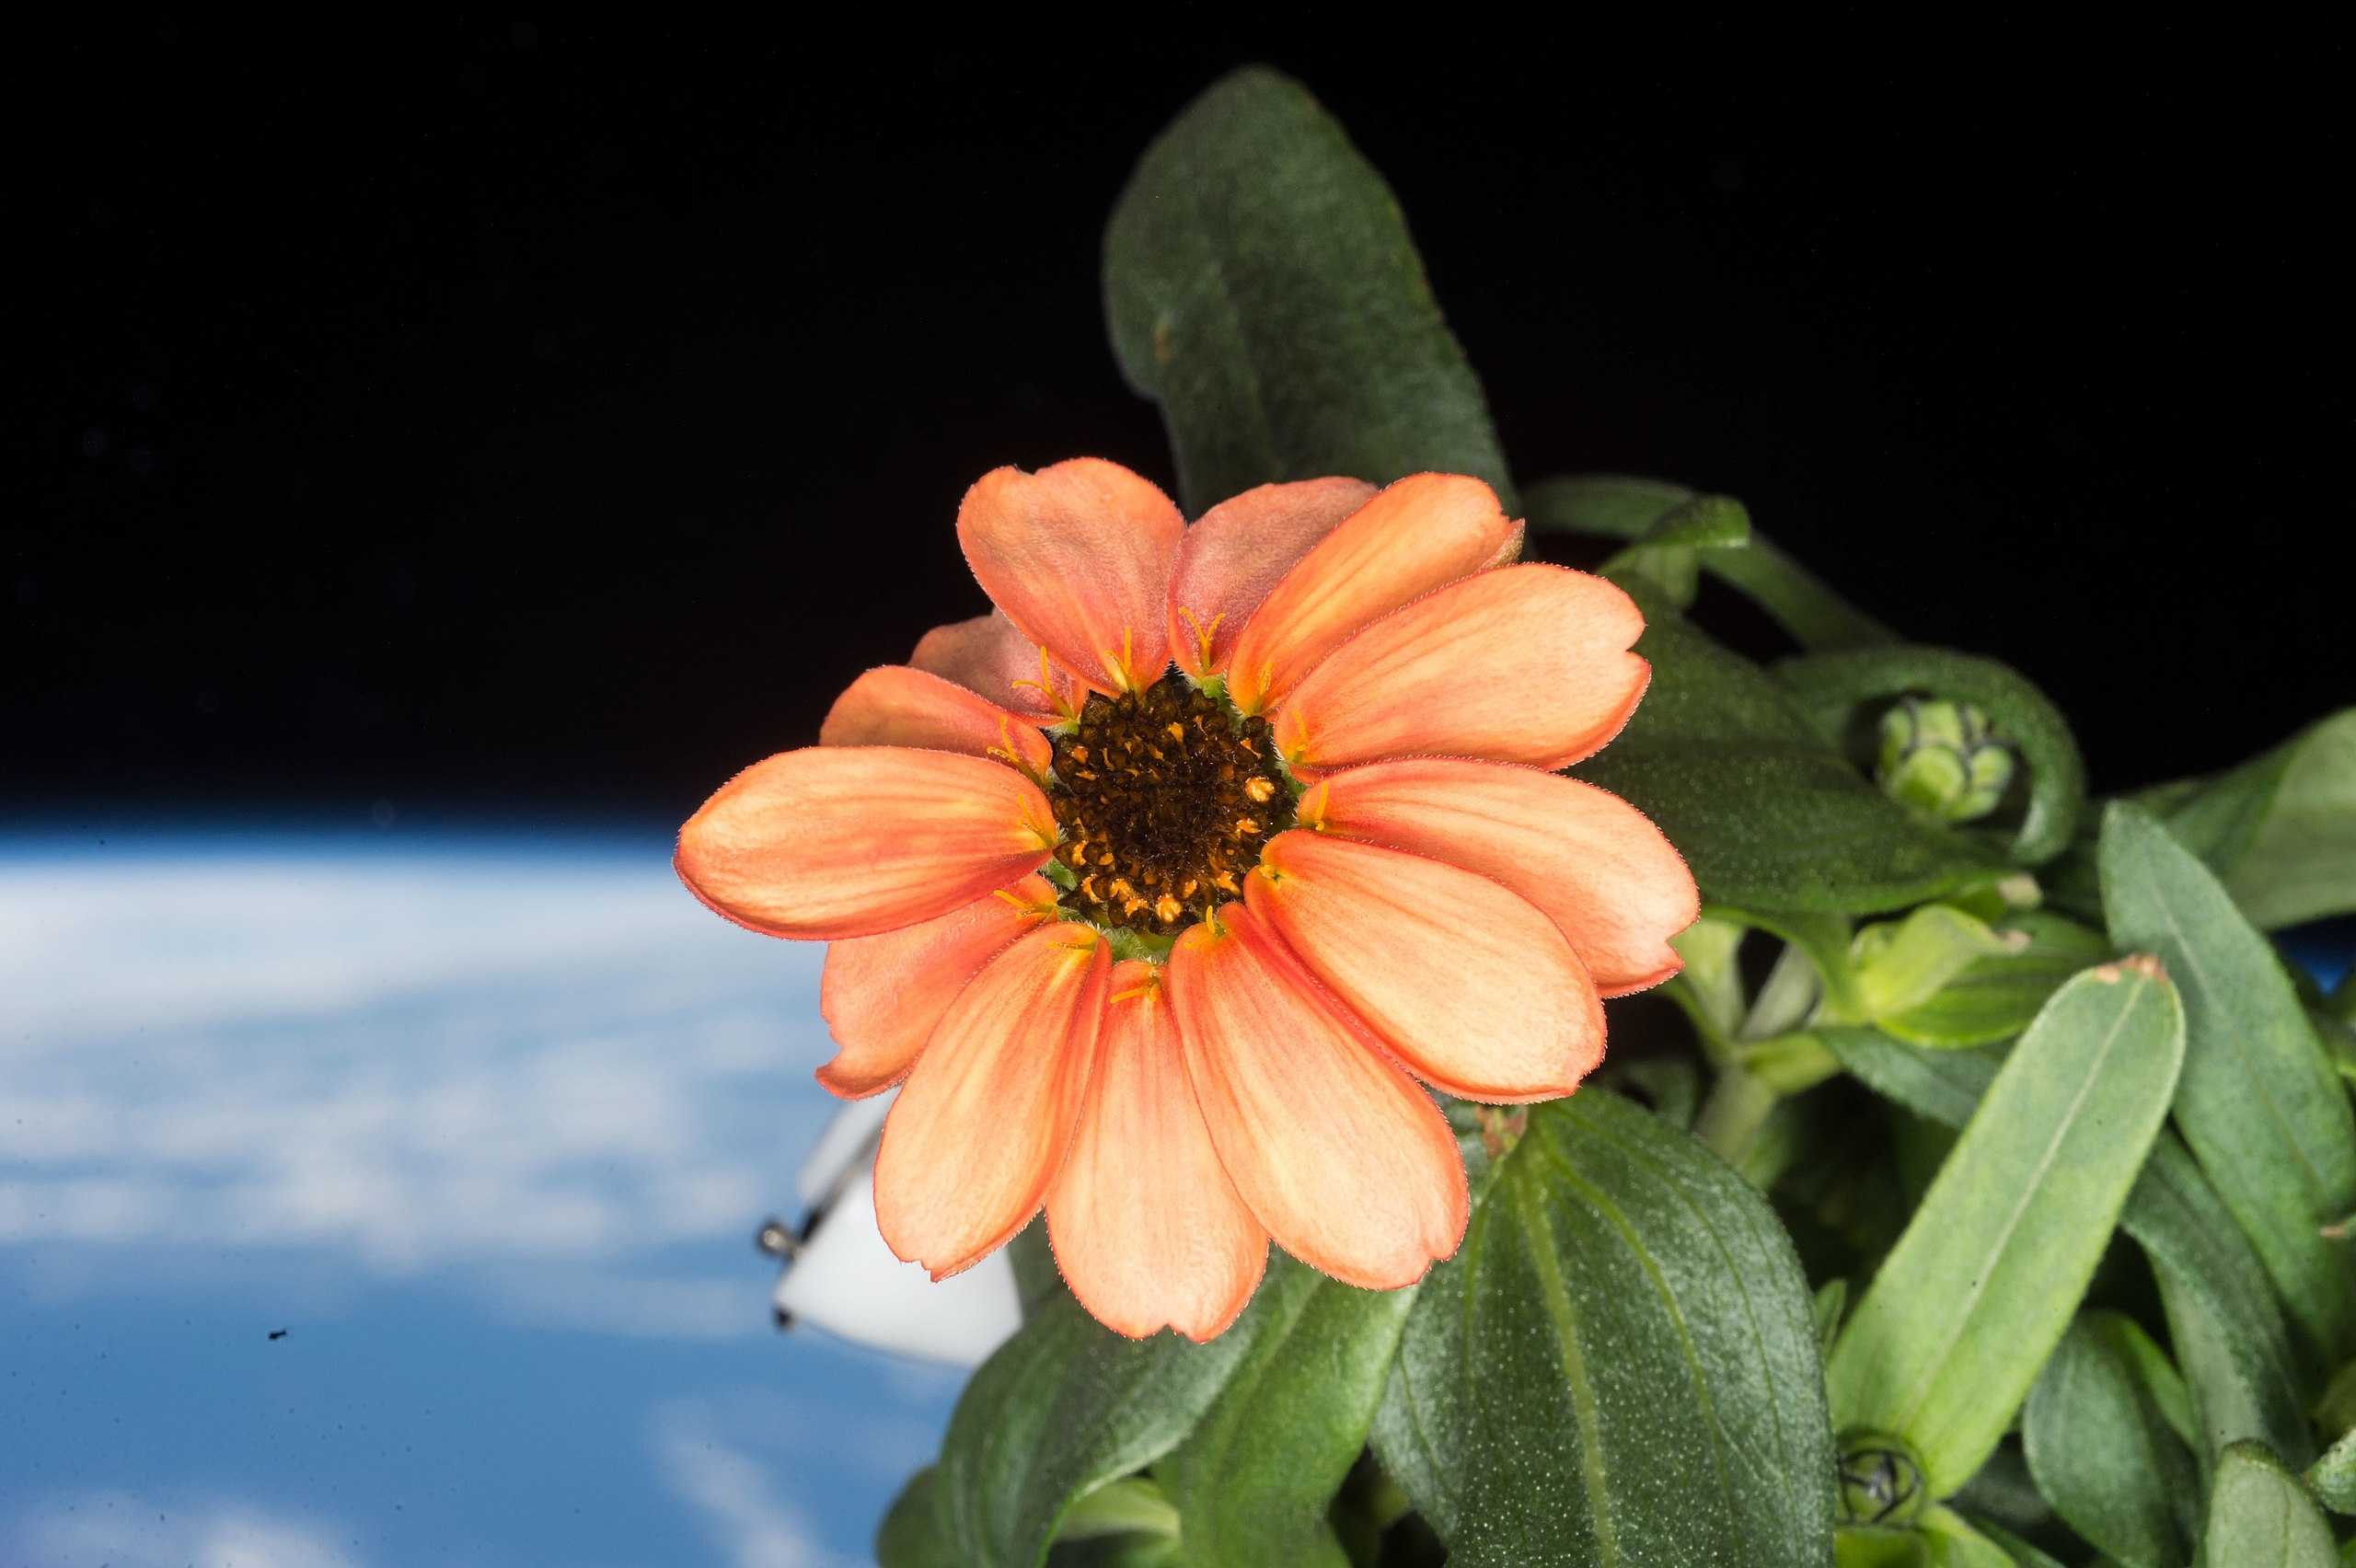 Zinnia flower grew in Veggie onboard the ISS